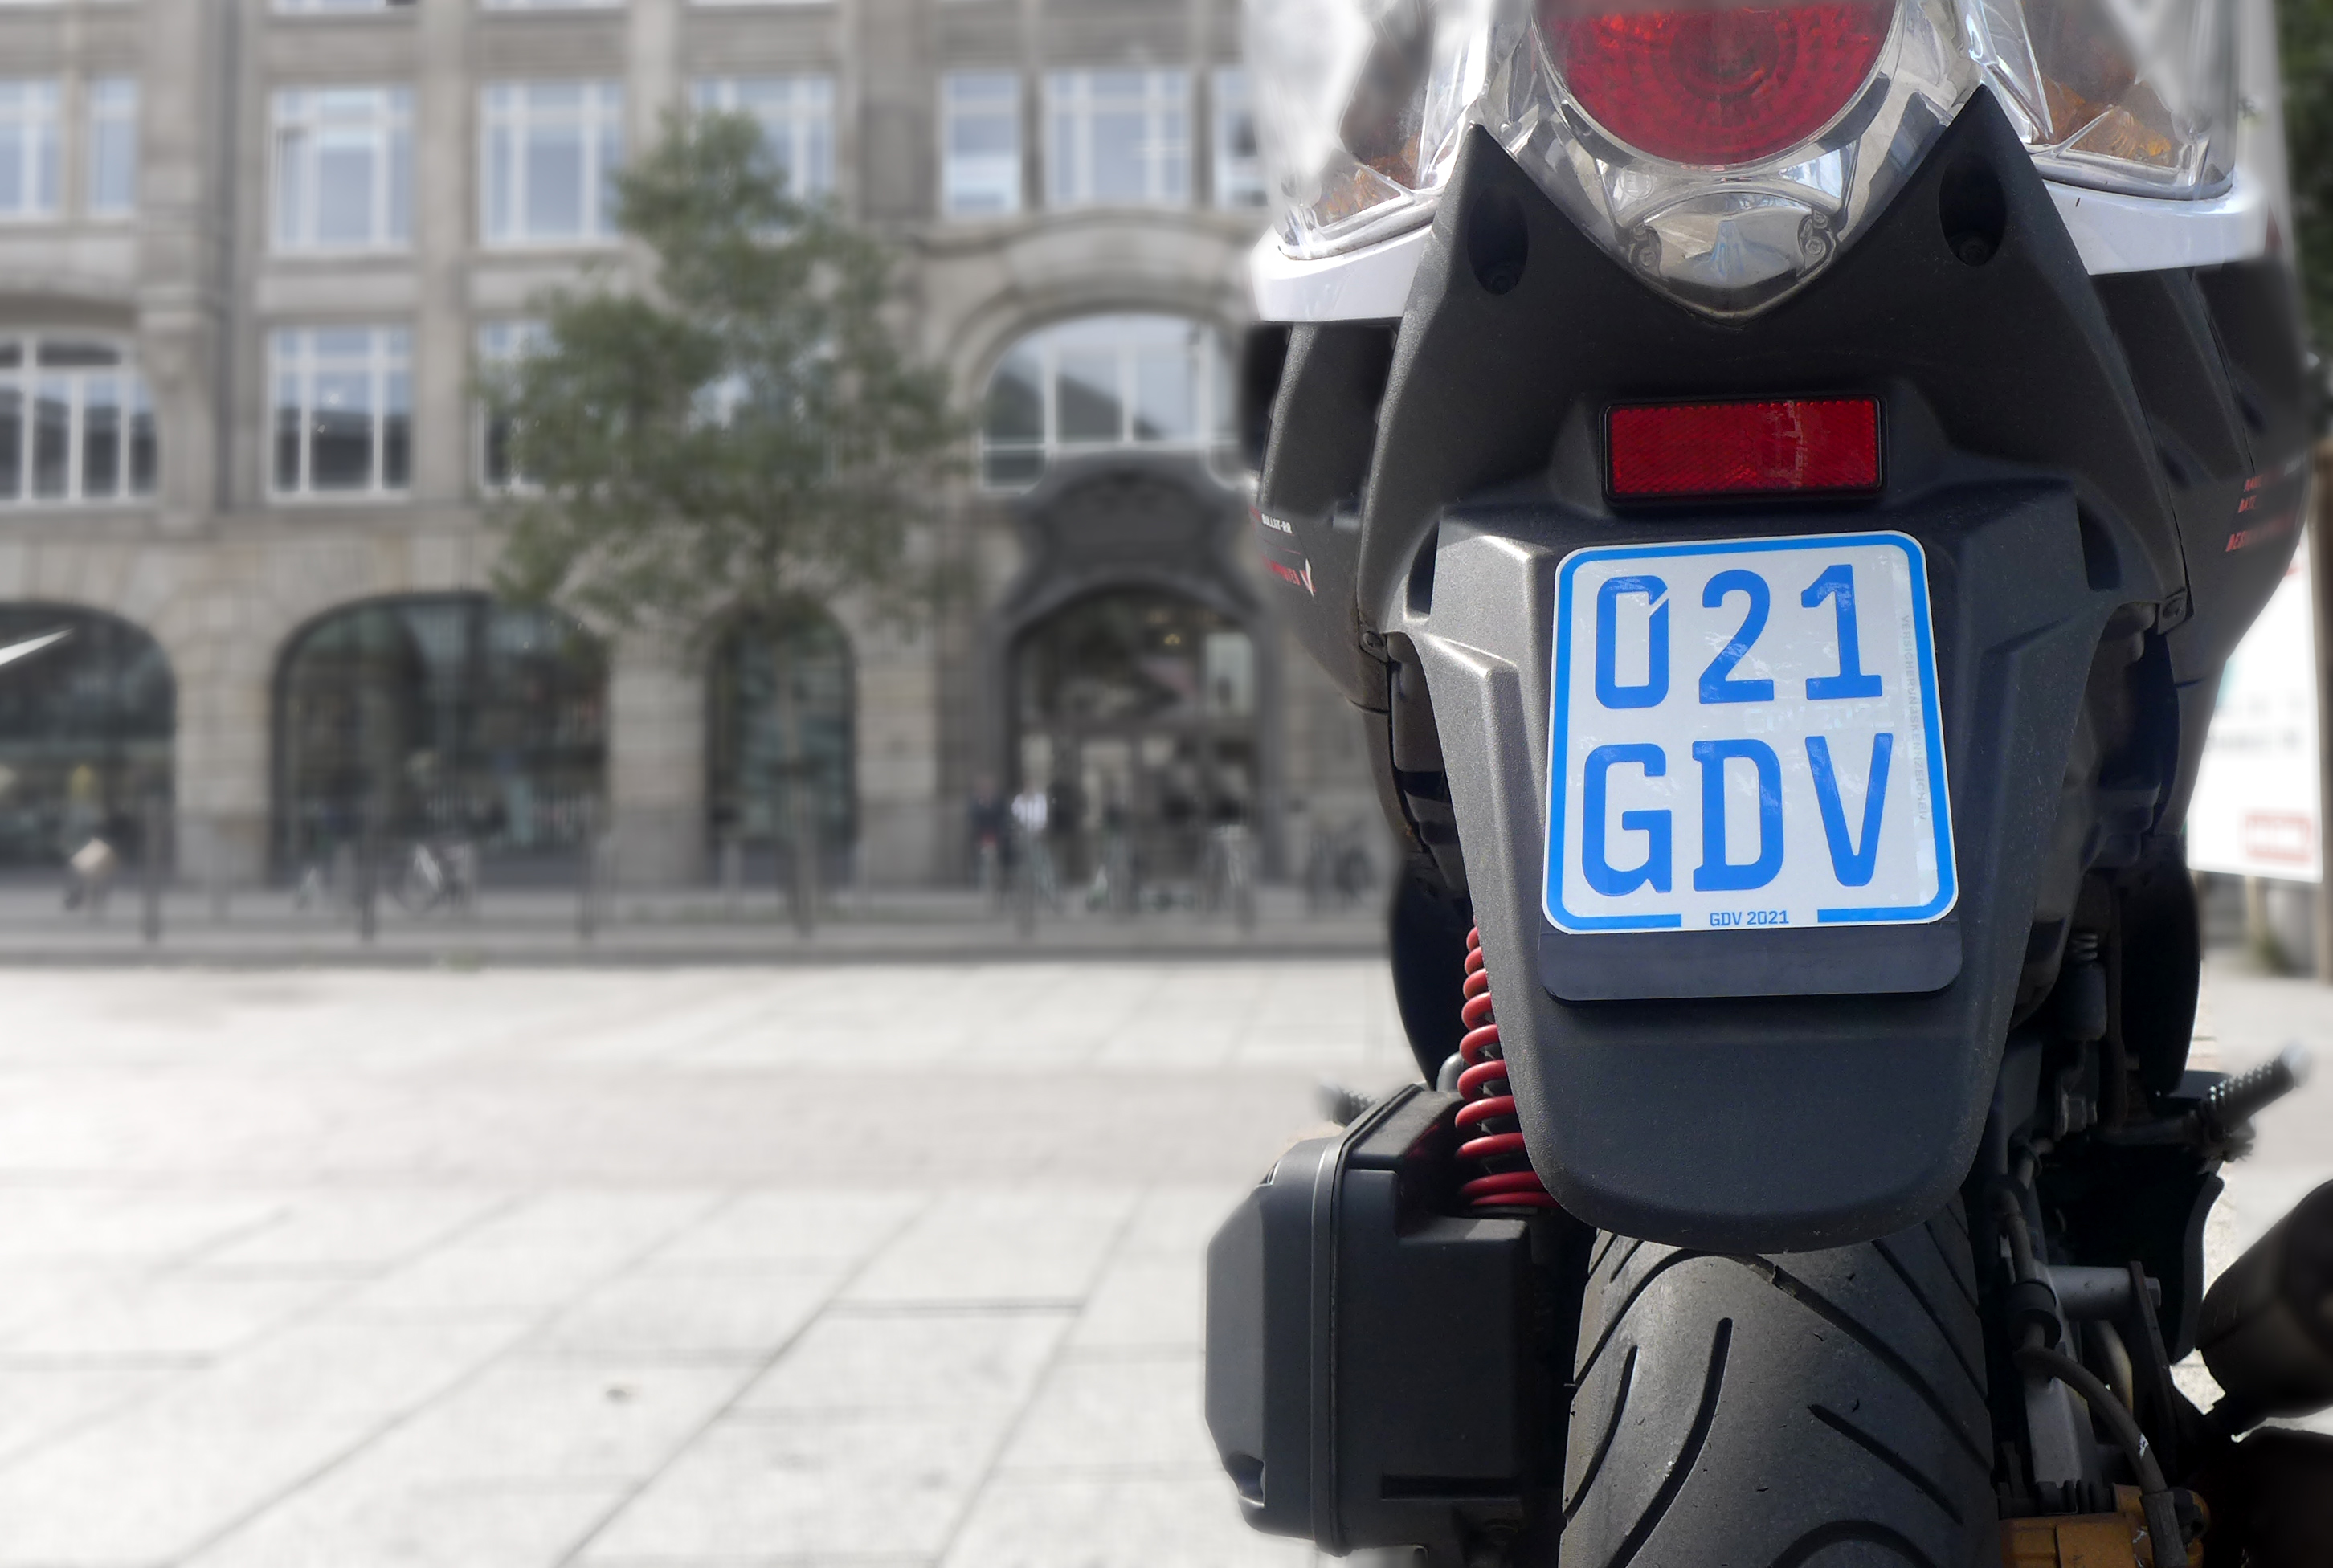 Kennzeichen für Mofa- und Mopedfahrer können jetzt auch geklebt werden